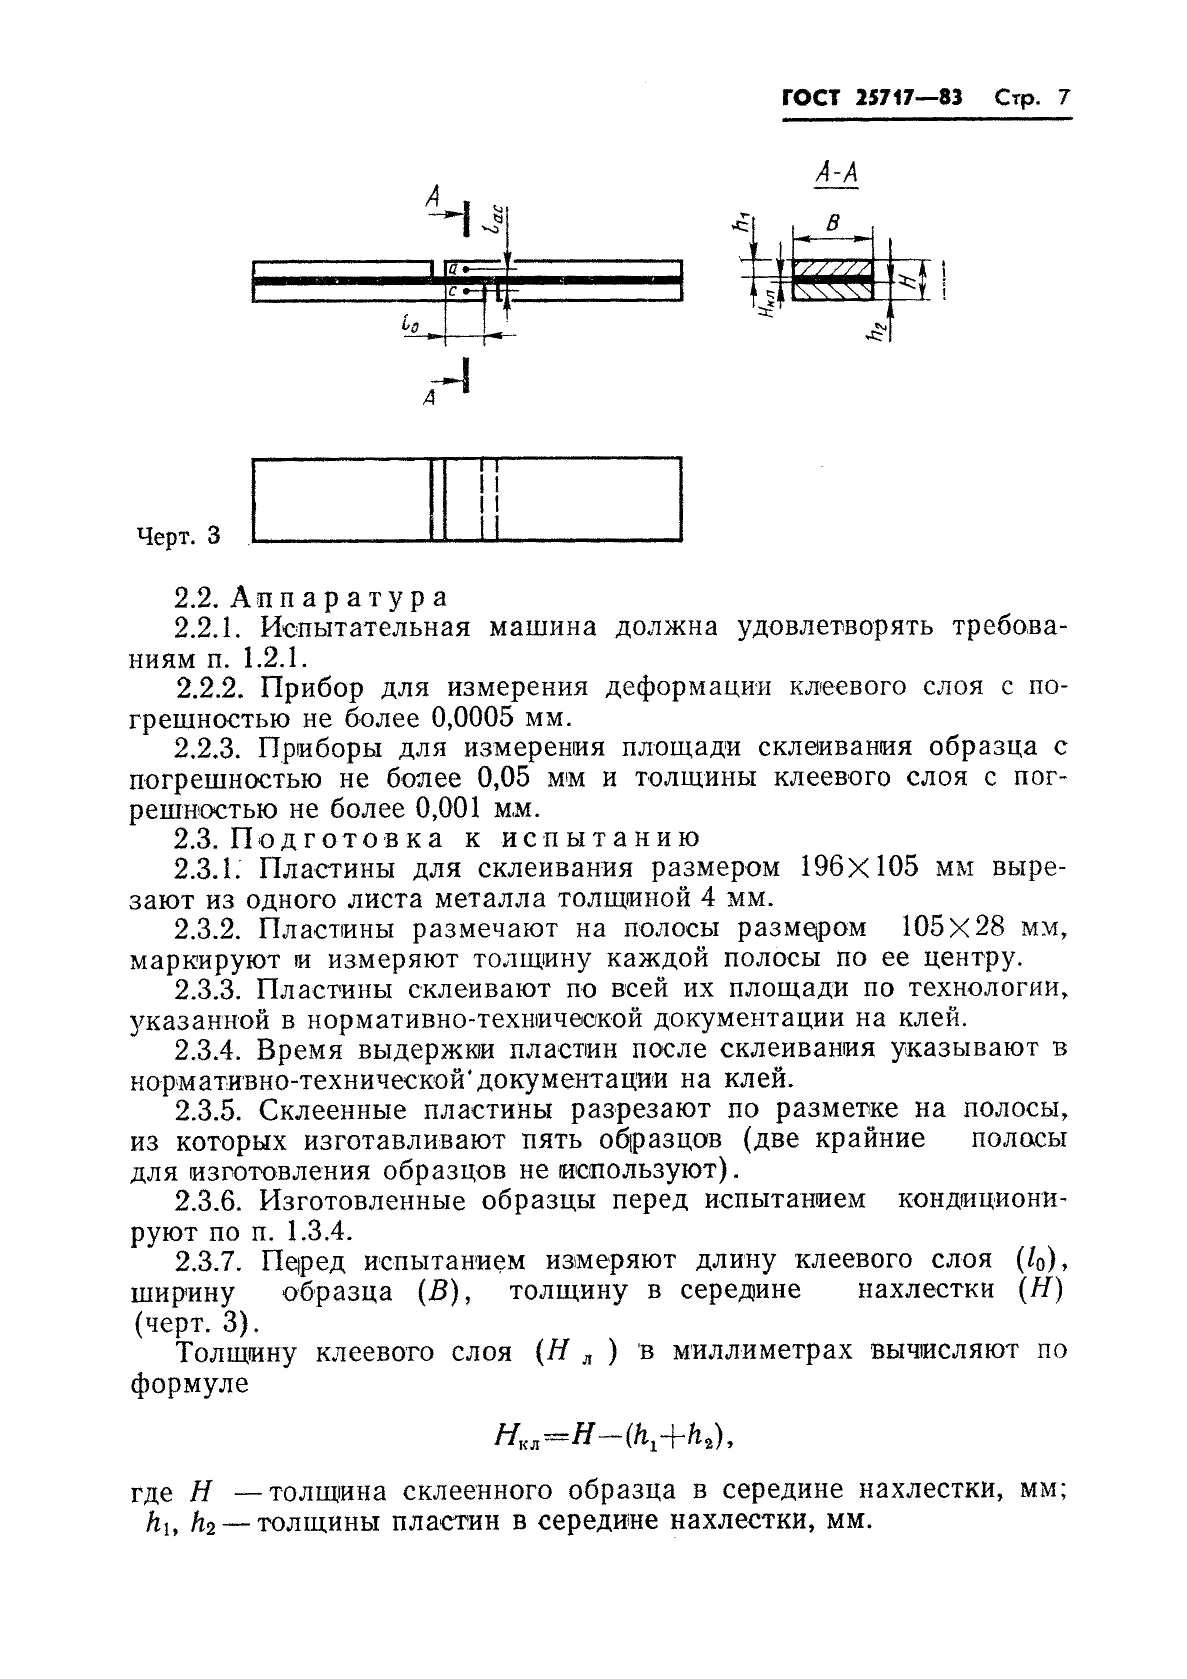 ГОСТ 25717-83 Клеи. Методы определения модуля сдвига клея в клеевом соединении (фото 8 из 15)